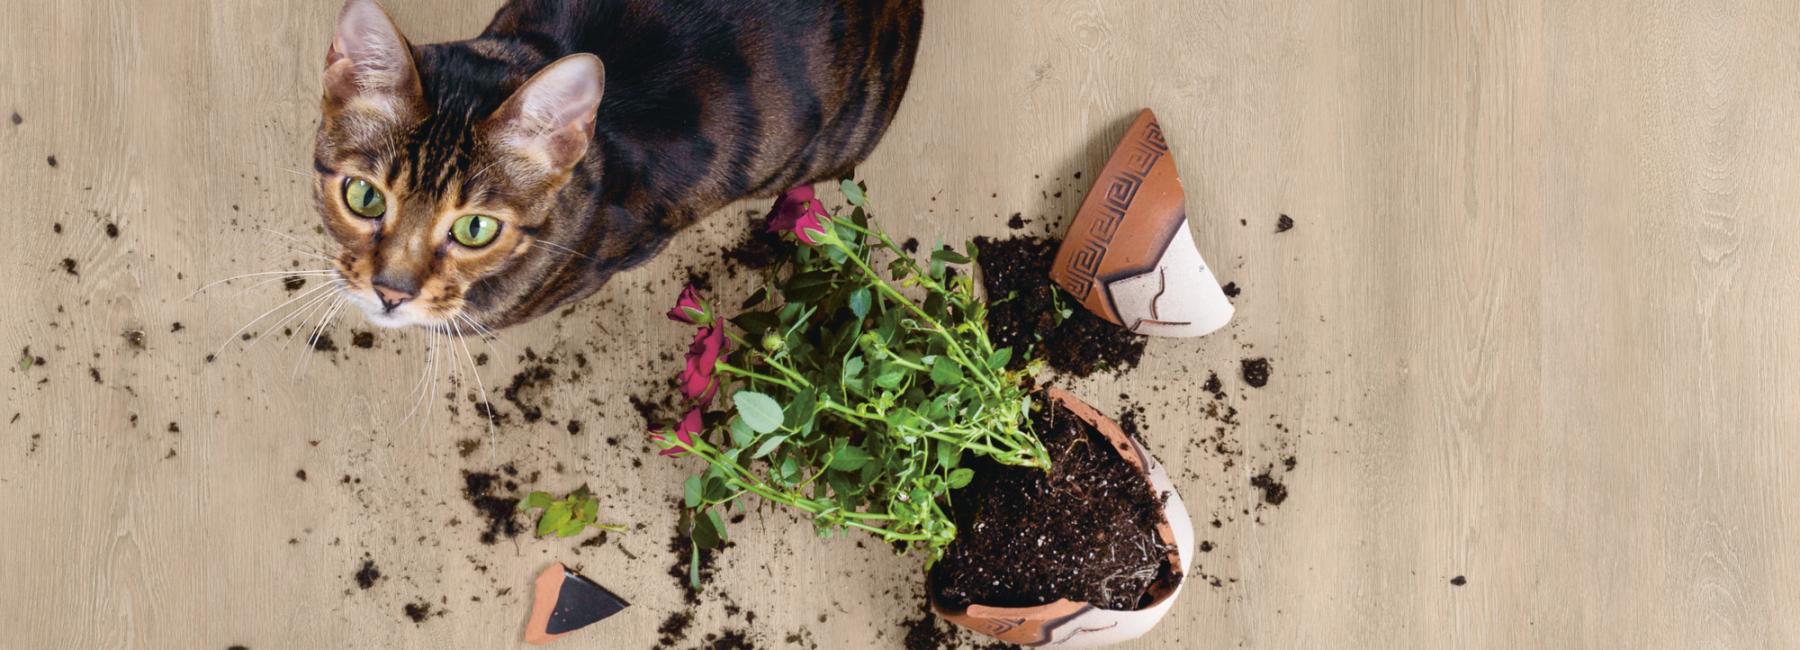 Gerflor Tipps und Tricks - Nassbereiche Blumentopf Katze